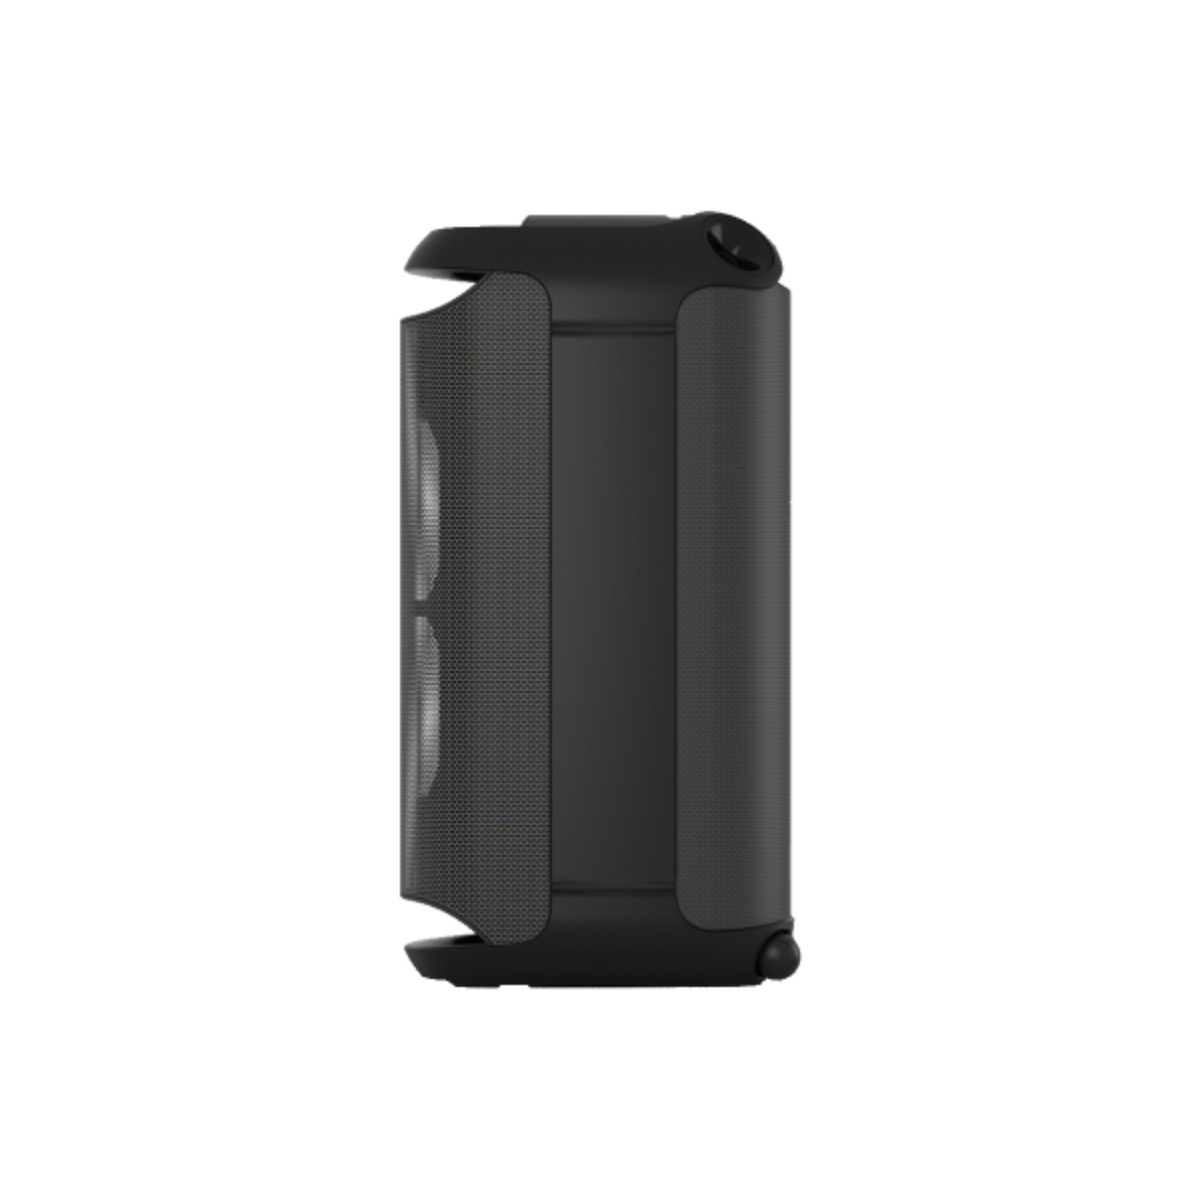 Sony XV800 X-Series One Box Hifi Wireless Party Speaker, 77 W, Black, SRS-XV800